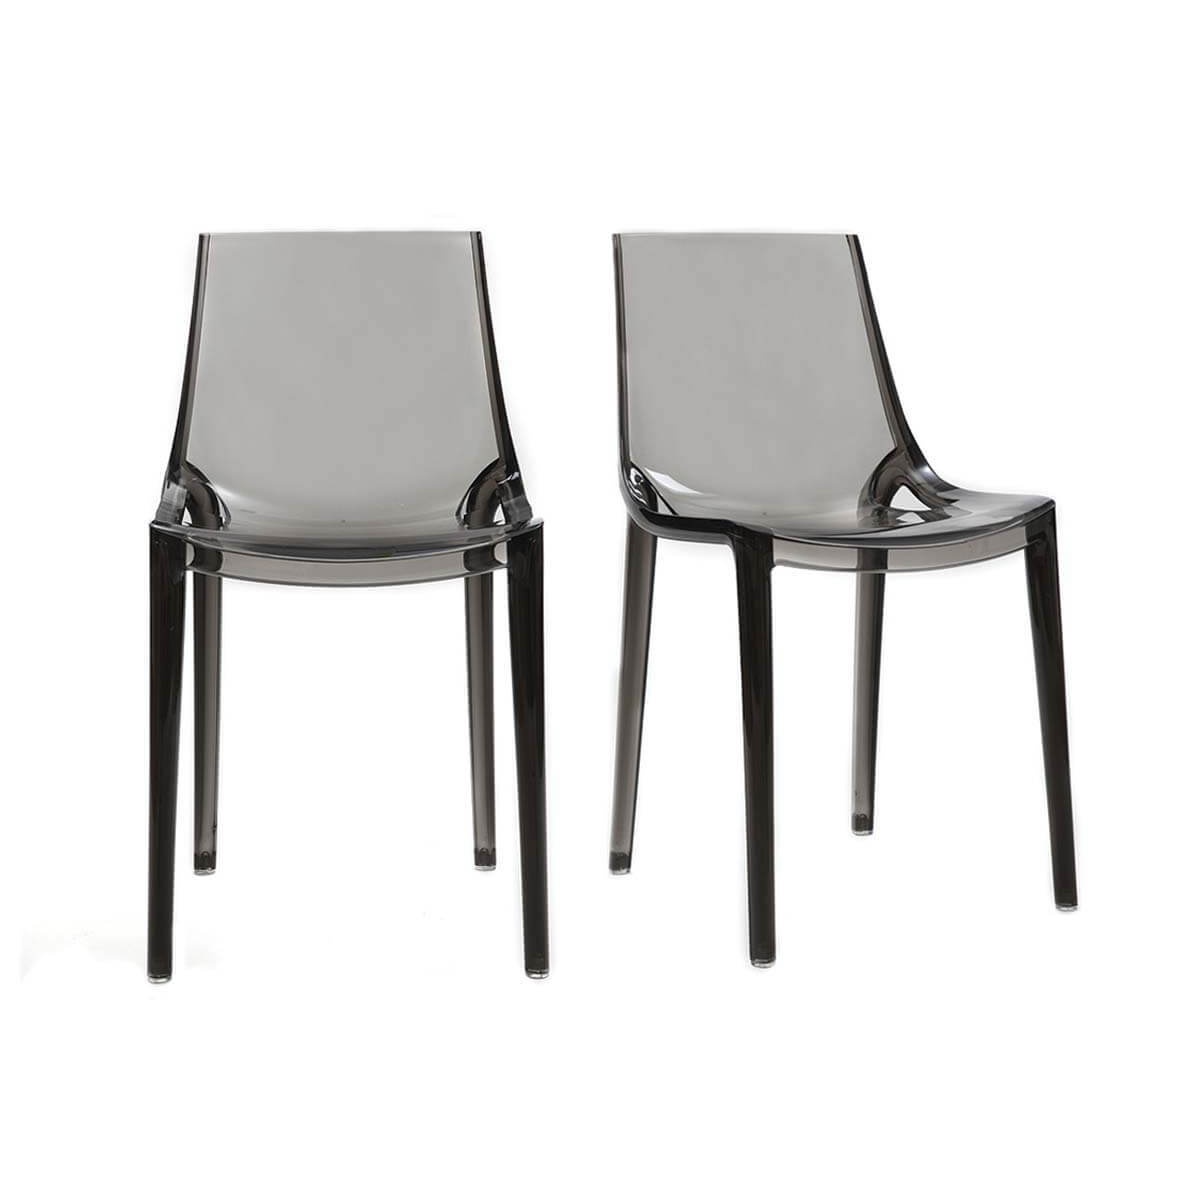 Chaises design grises fumées empilables intérieur / extérieur (lot de 2) YZEL vue1